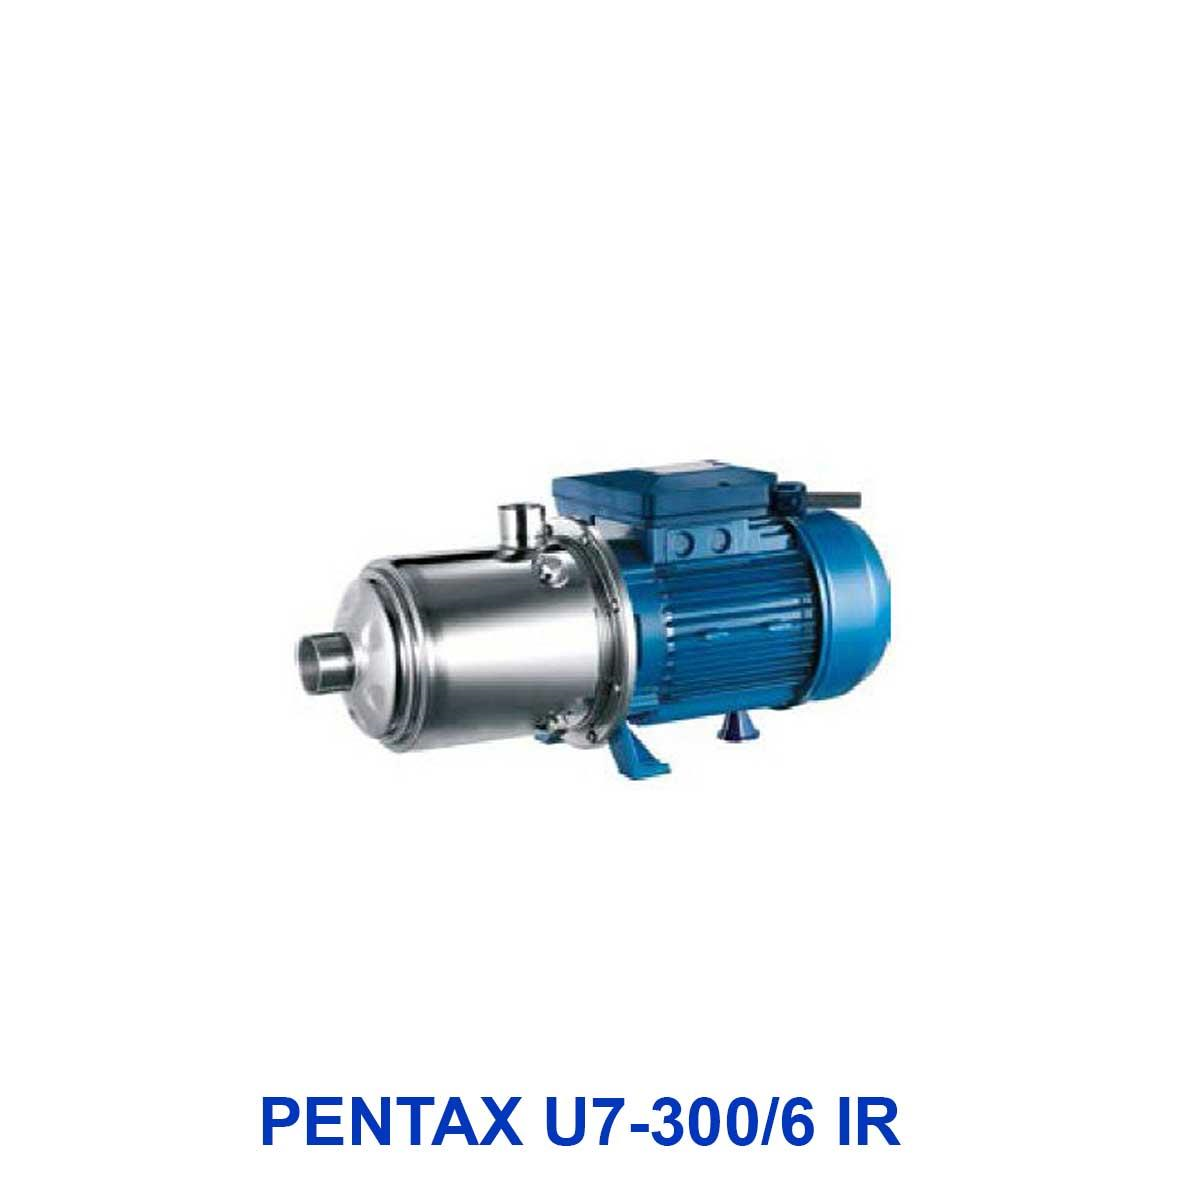 water pump-Horizontal-1phase-PENTAX-U7-300-6-IR